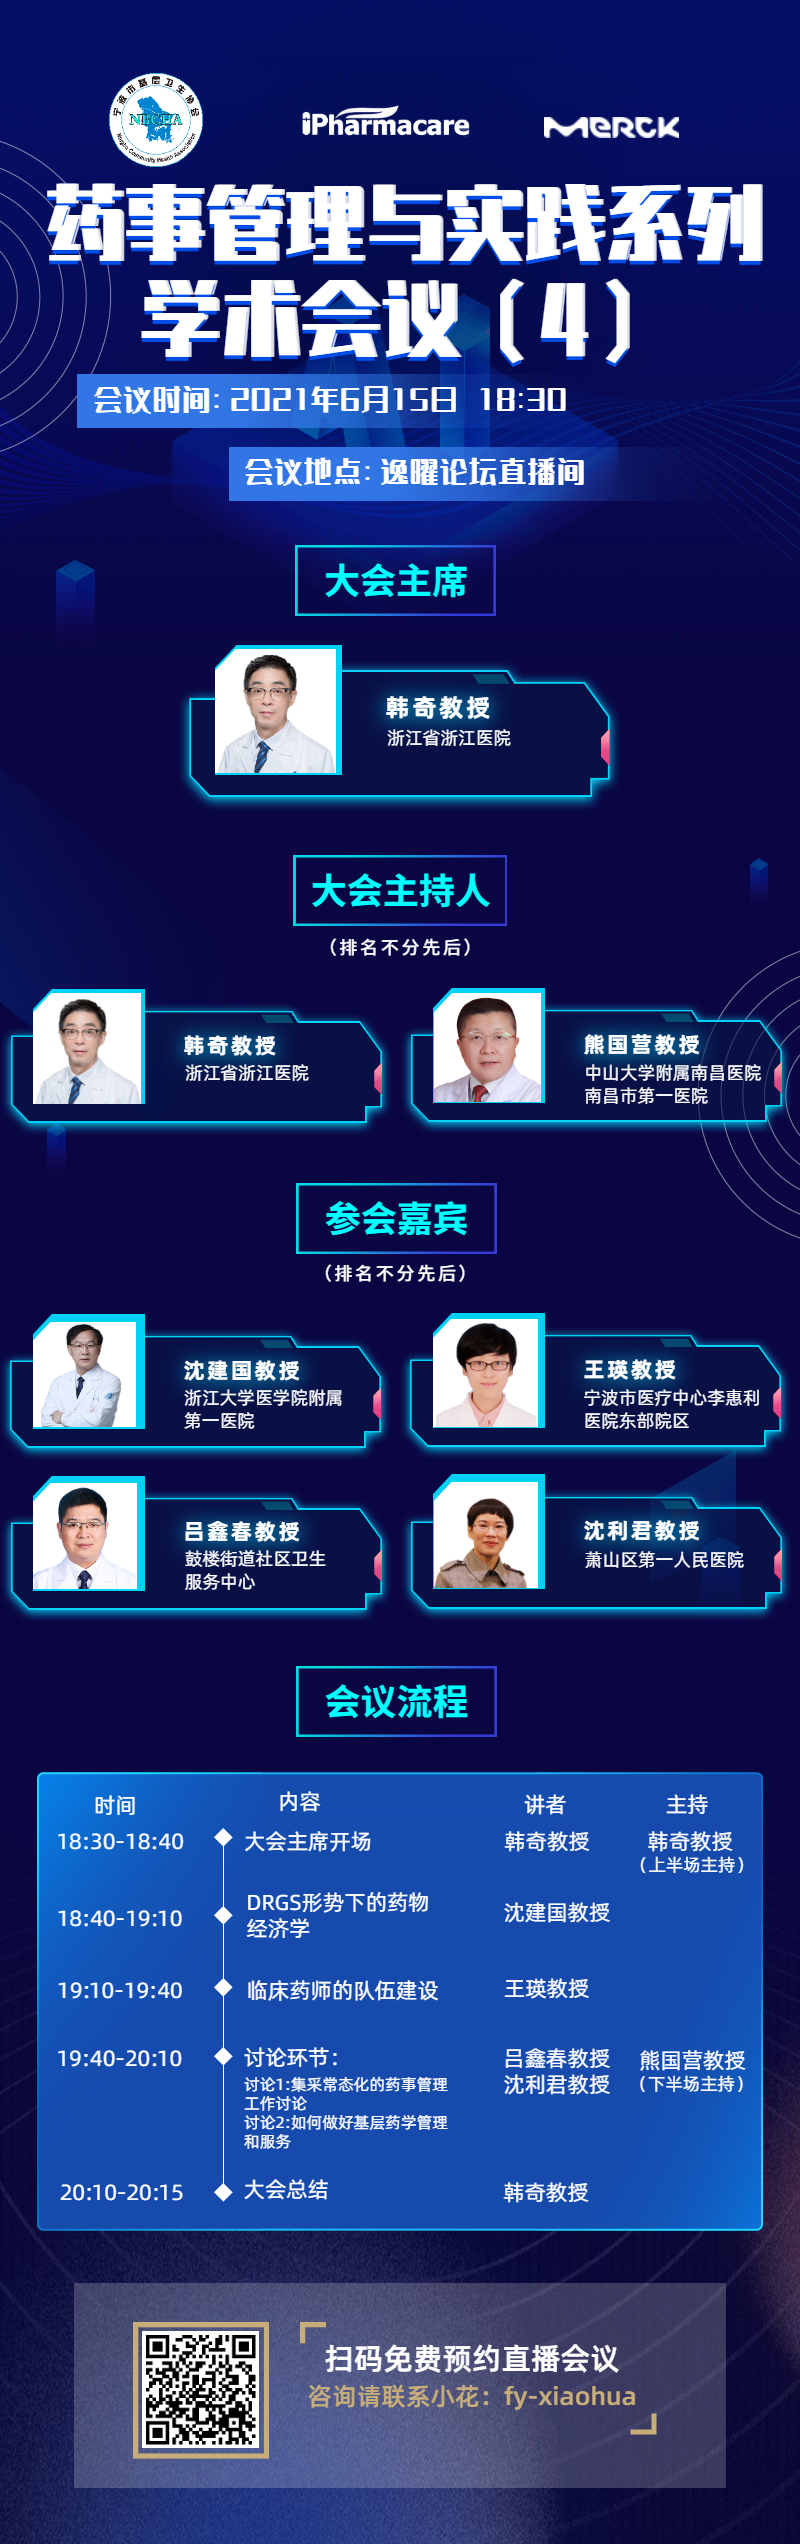 中互联网科技国人工智能峰会手机长图 (2).jpg